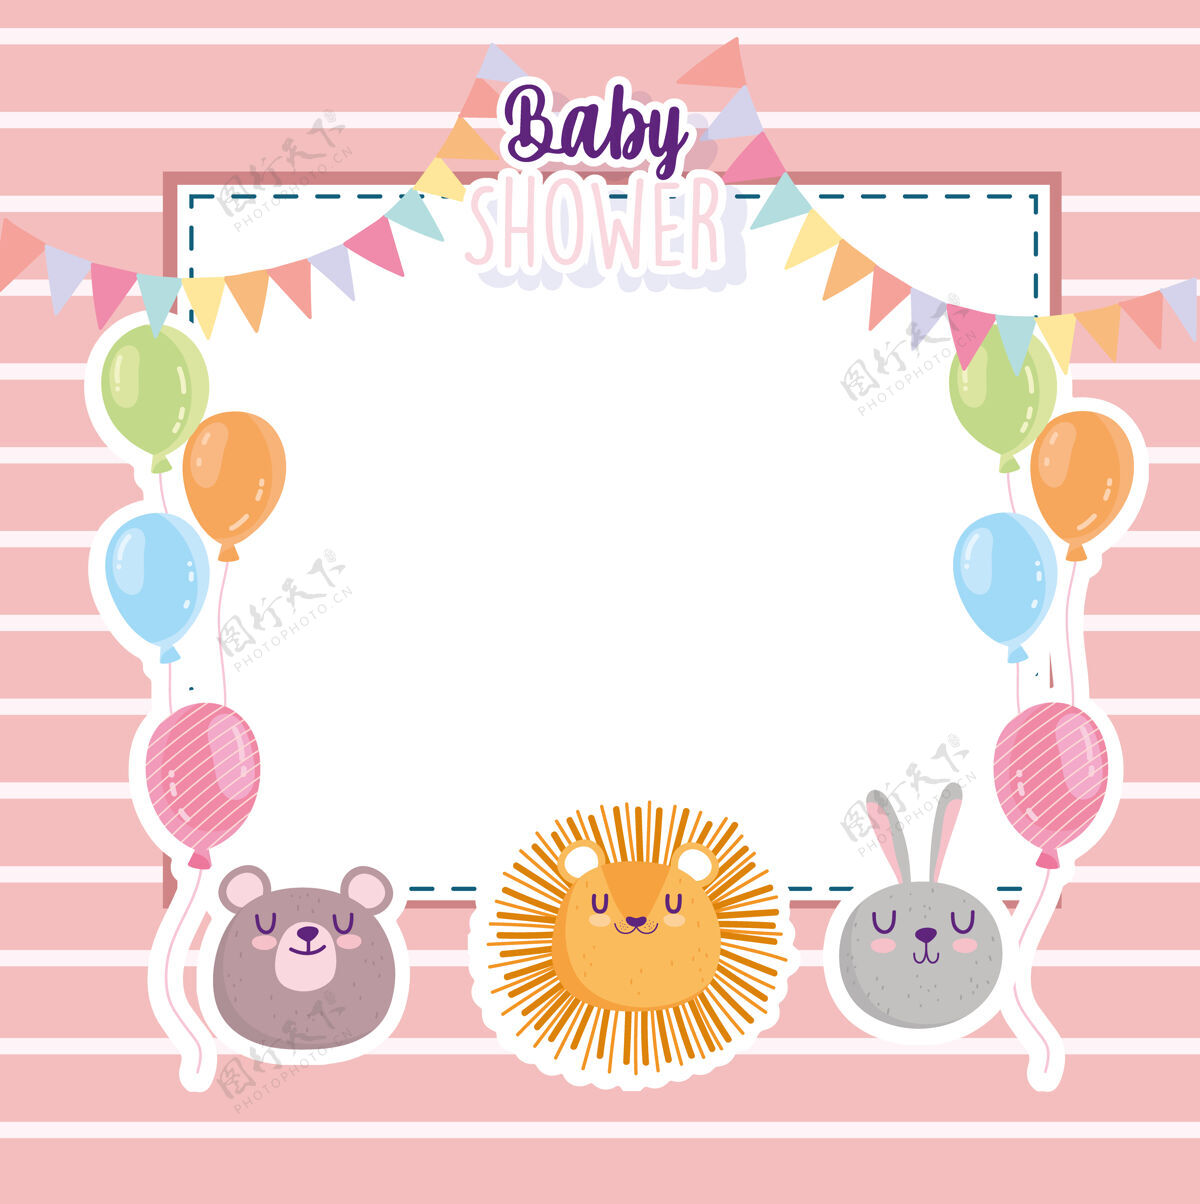 小婴儿淋浴 有趣的狮子兔和熊脸气球卡矢量插图邀请宝贝日期